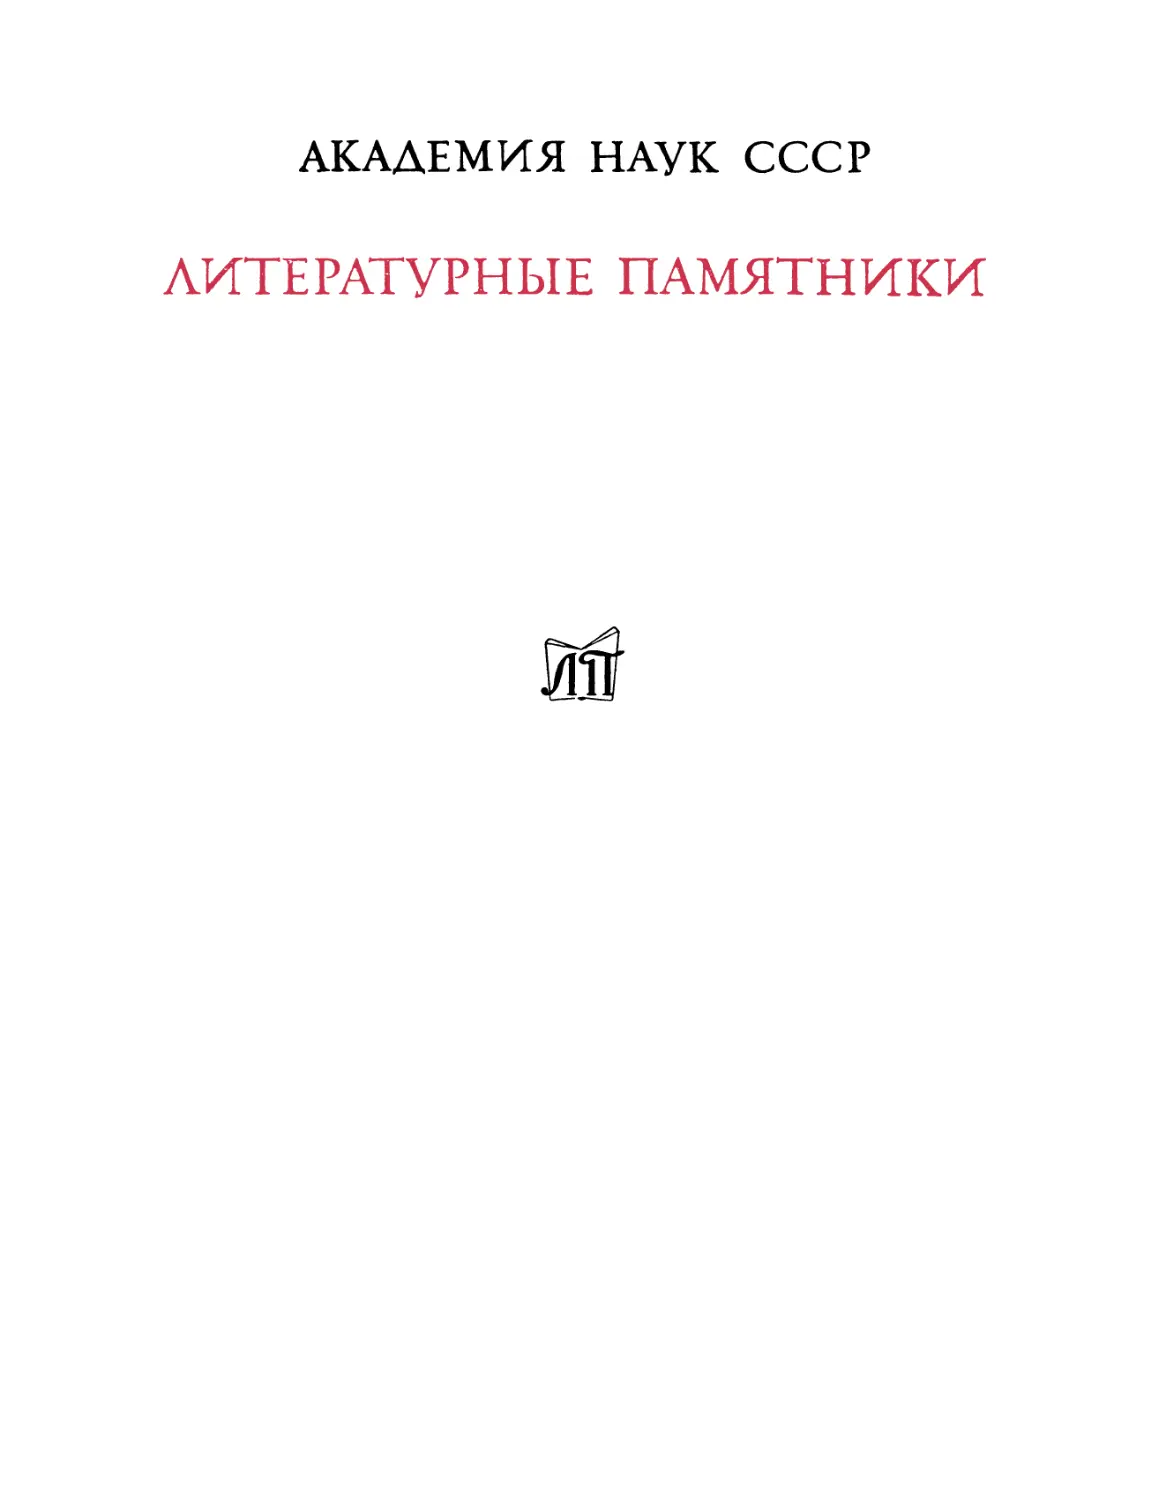 Древние российские стихотворения, собранные Киршею Даниловым. 2-е изд. - 1977